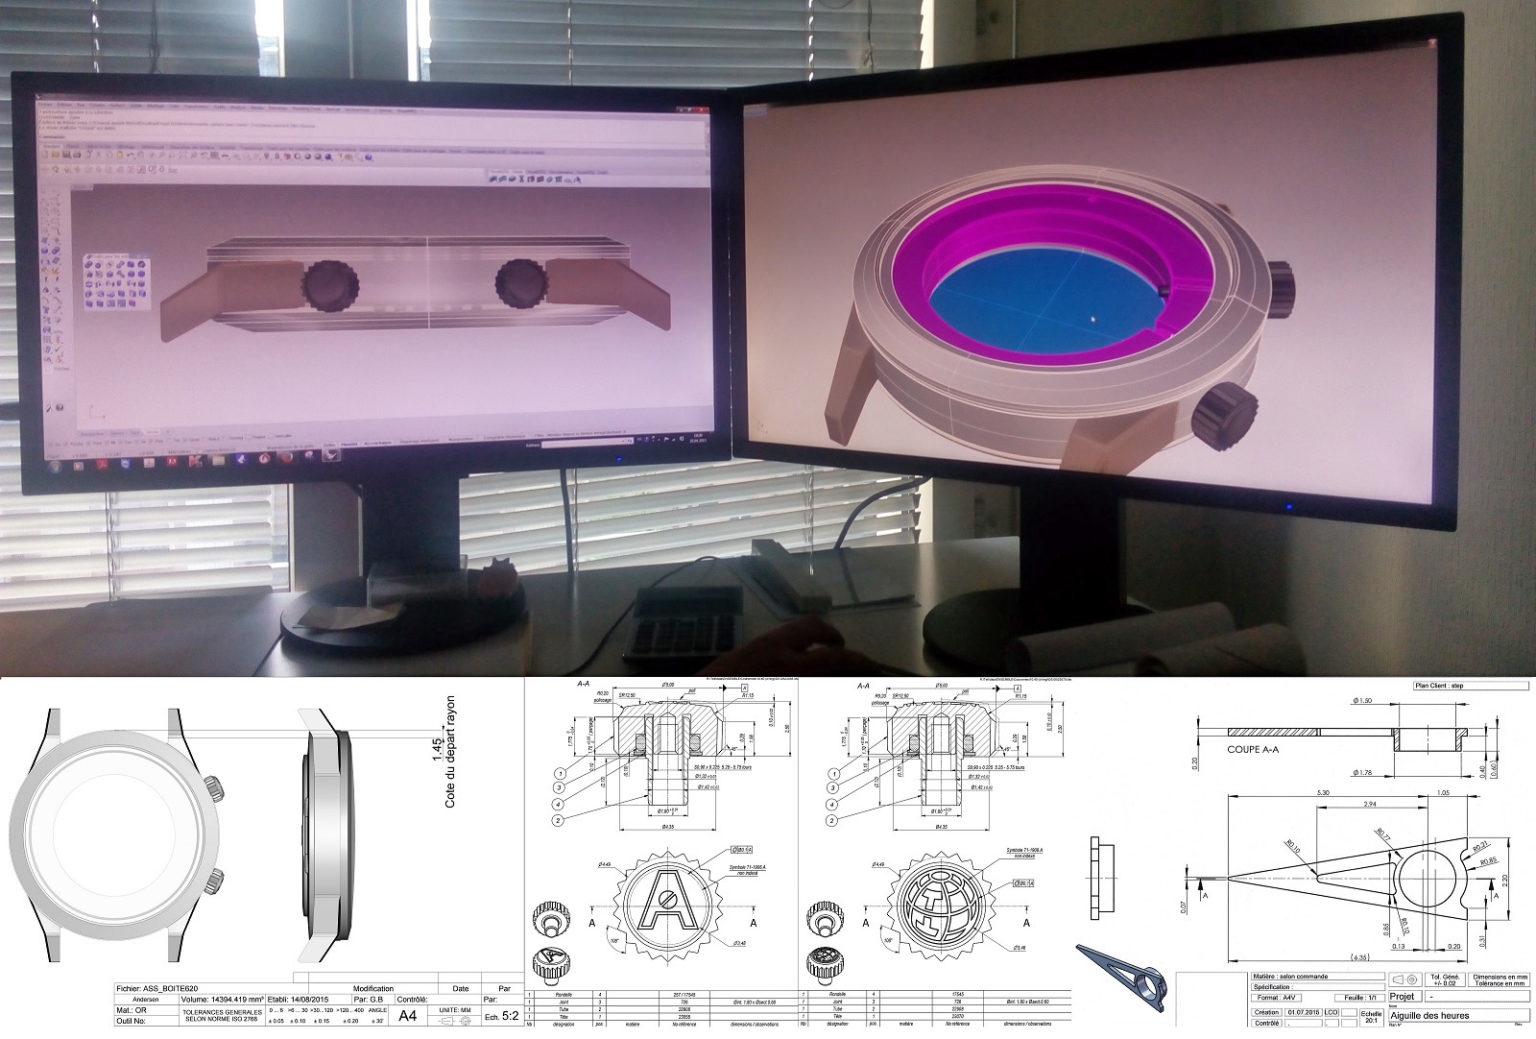 Các đối tác chế tạo các bộ phận cơ bản đã chuyển đổi bản vẽ tay của Andersen thành các bản vẽ CAD cần thiết cho sản xuất công nghiệp - trên đây là các kế hoạch cho bộ vỏ và núm vặn điều chỉnh